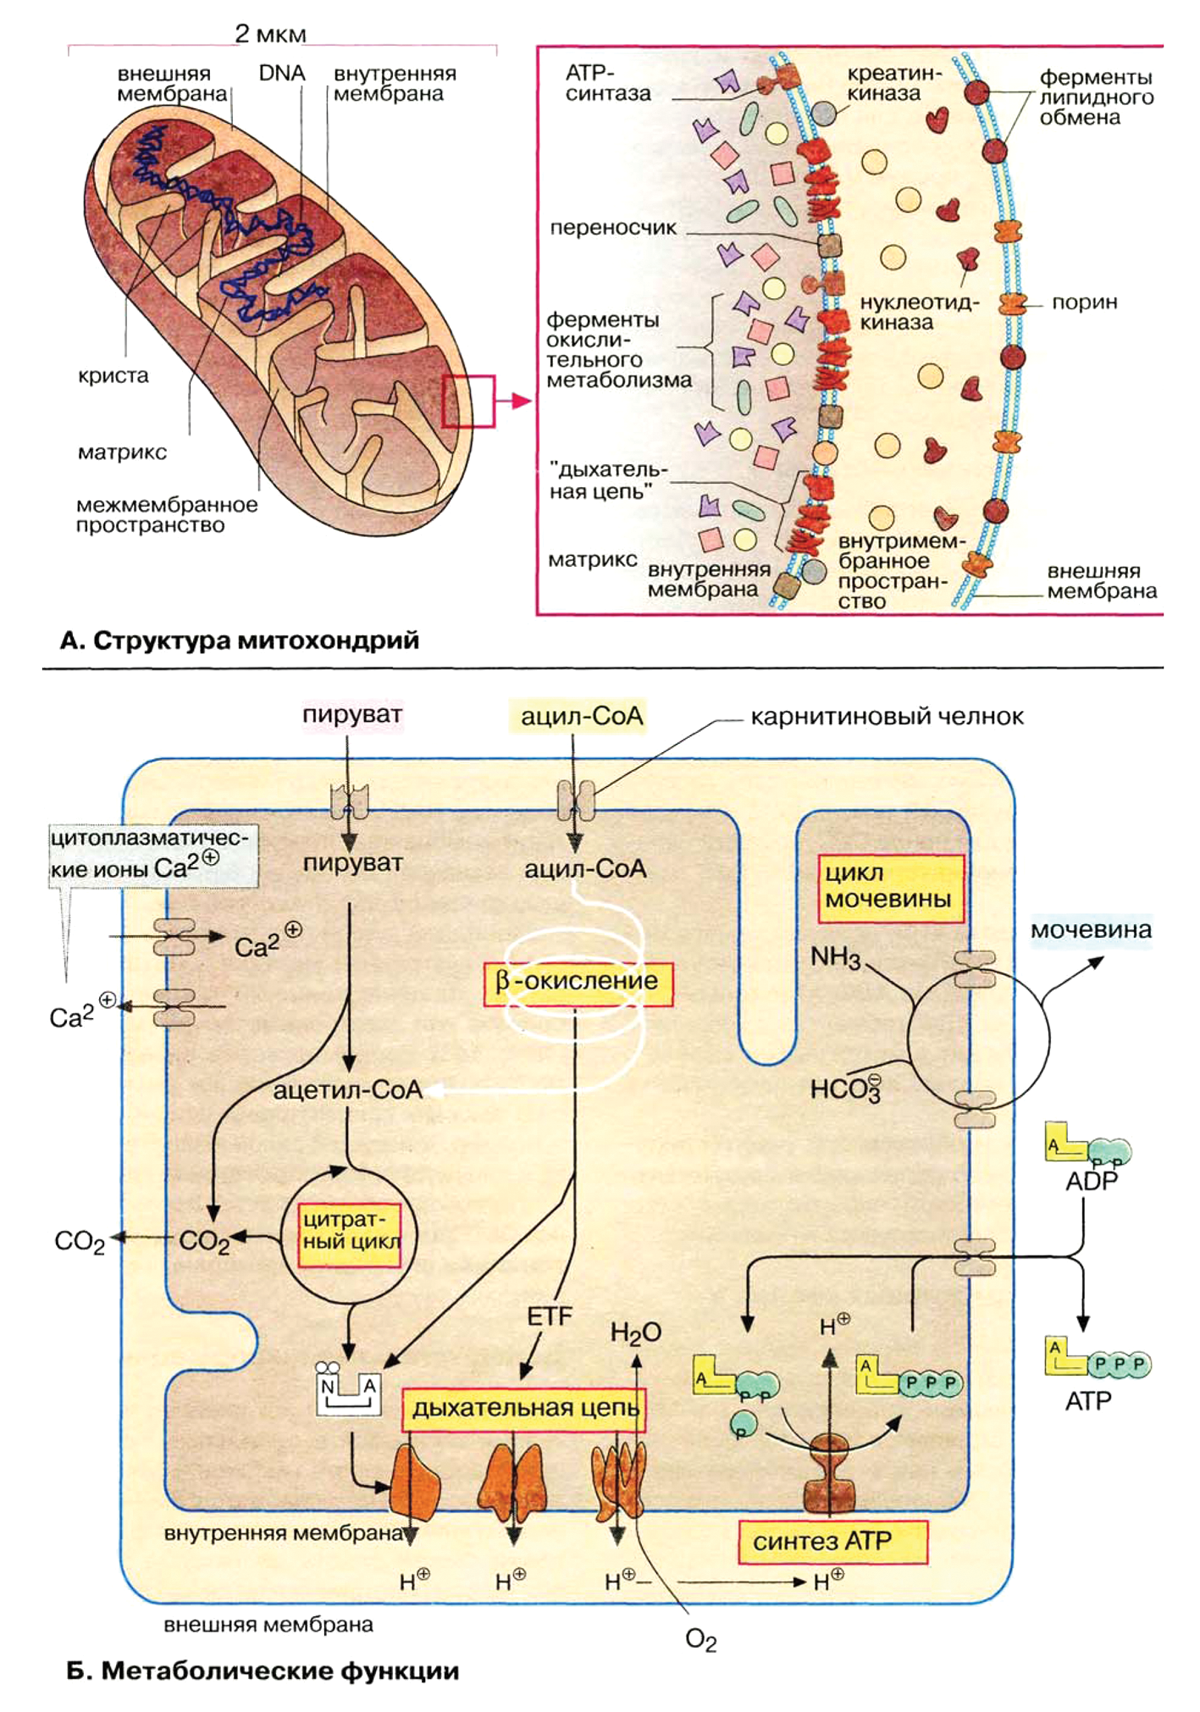 Рис. 1. Структура митохондрий и их метаболические функции